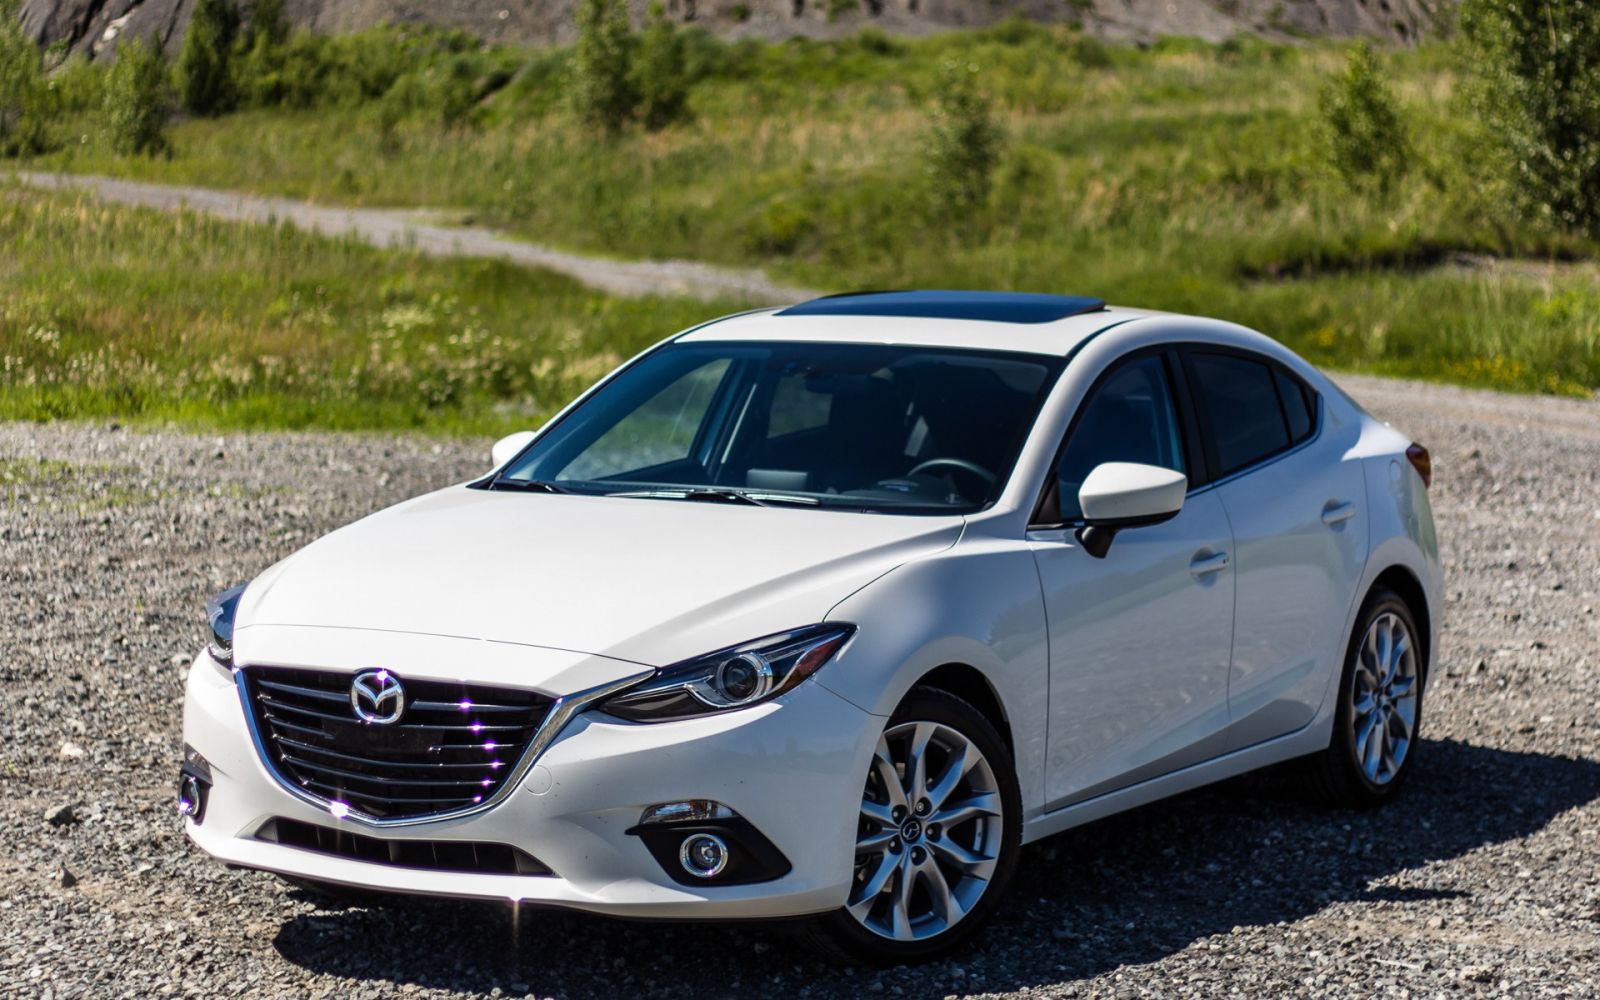 Chiếc xe ô tô cỡ nhỏ bán chạy nhất của Mazda có gì đặc biệt?